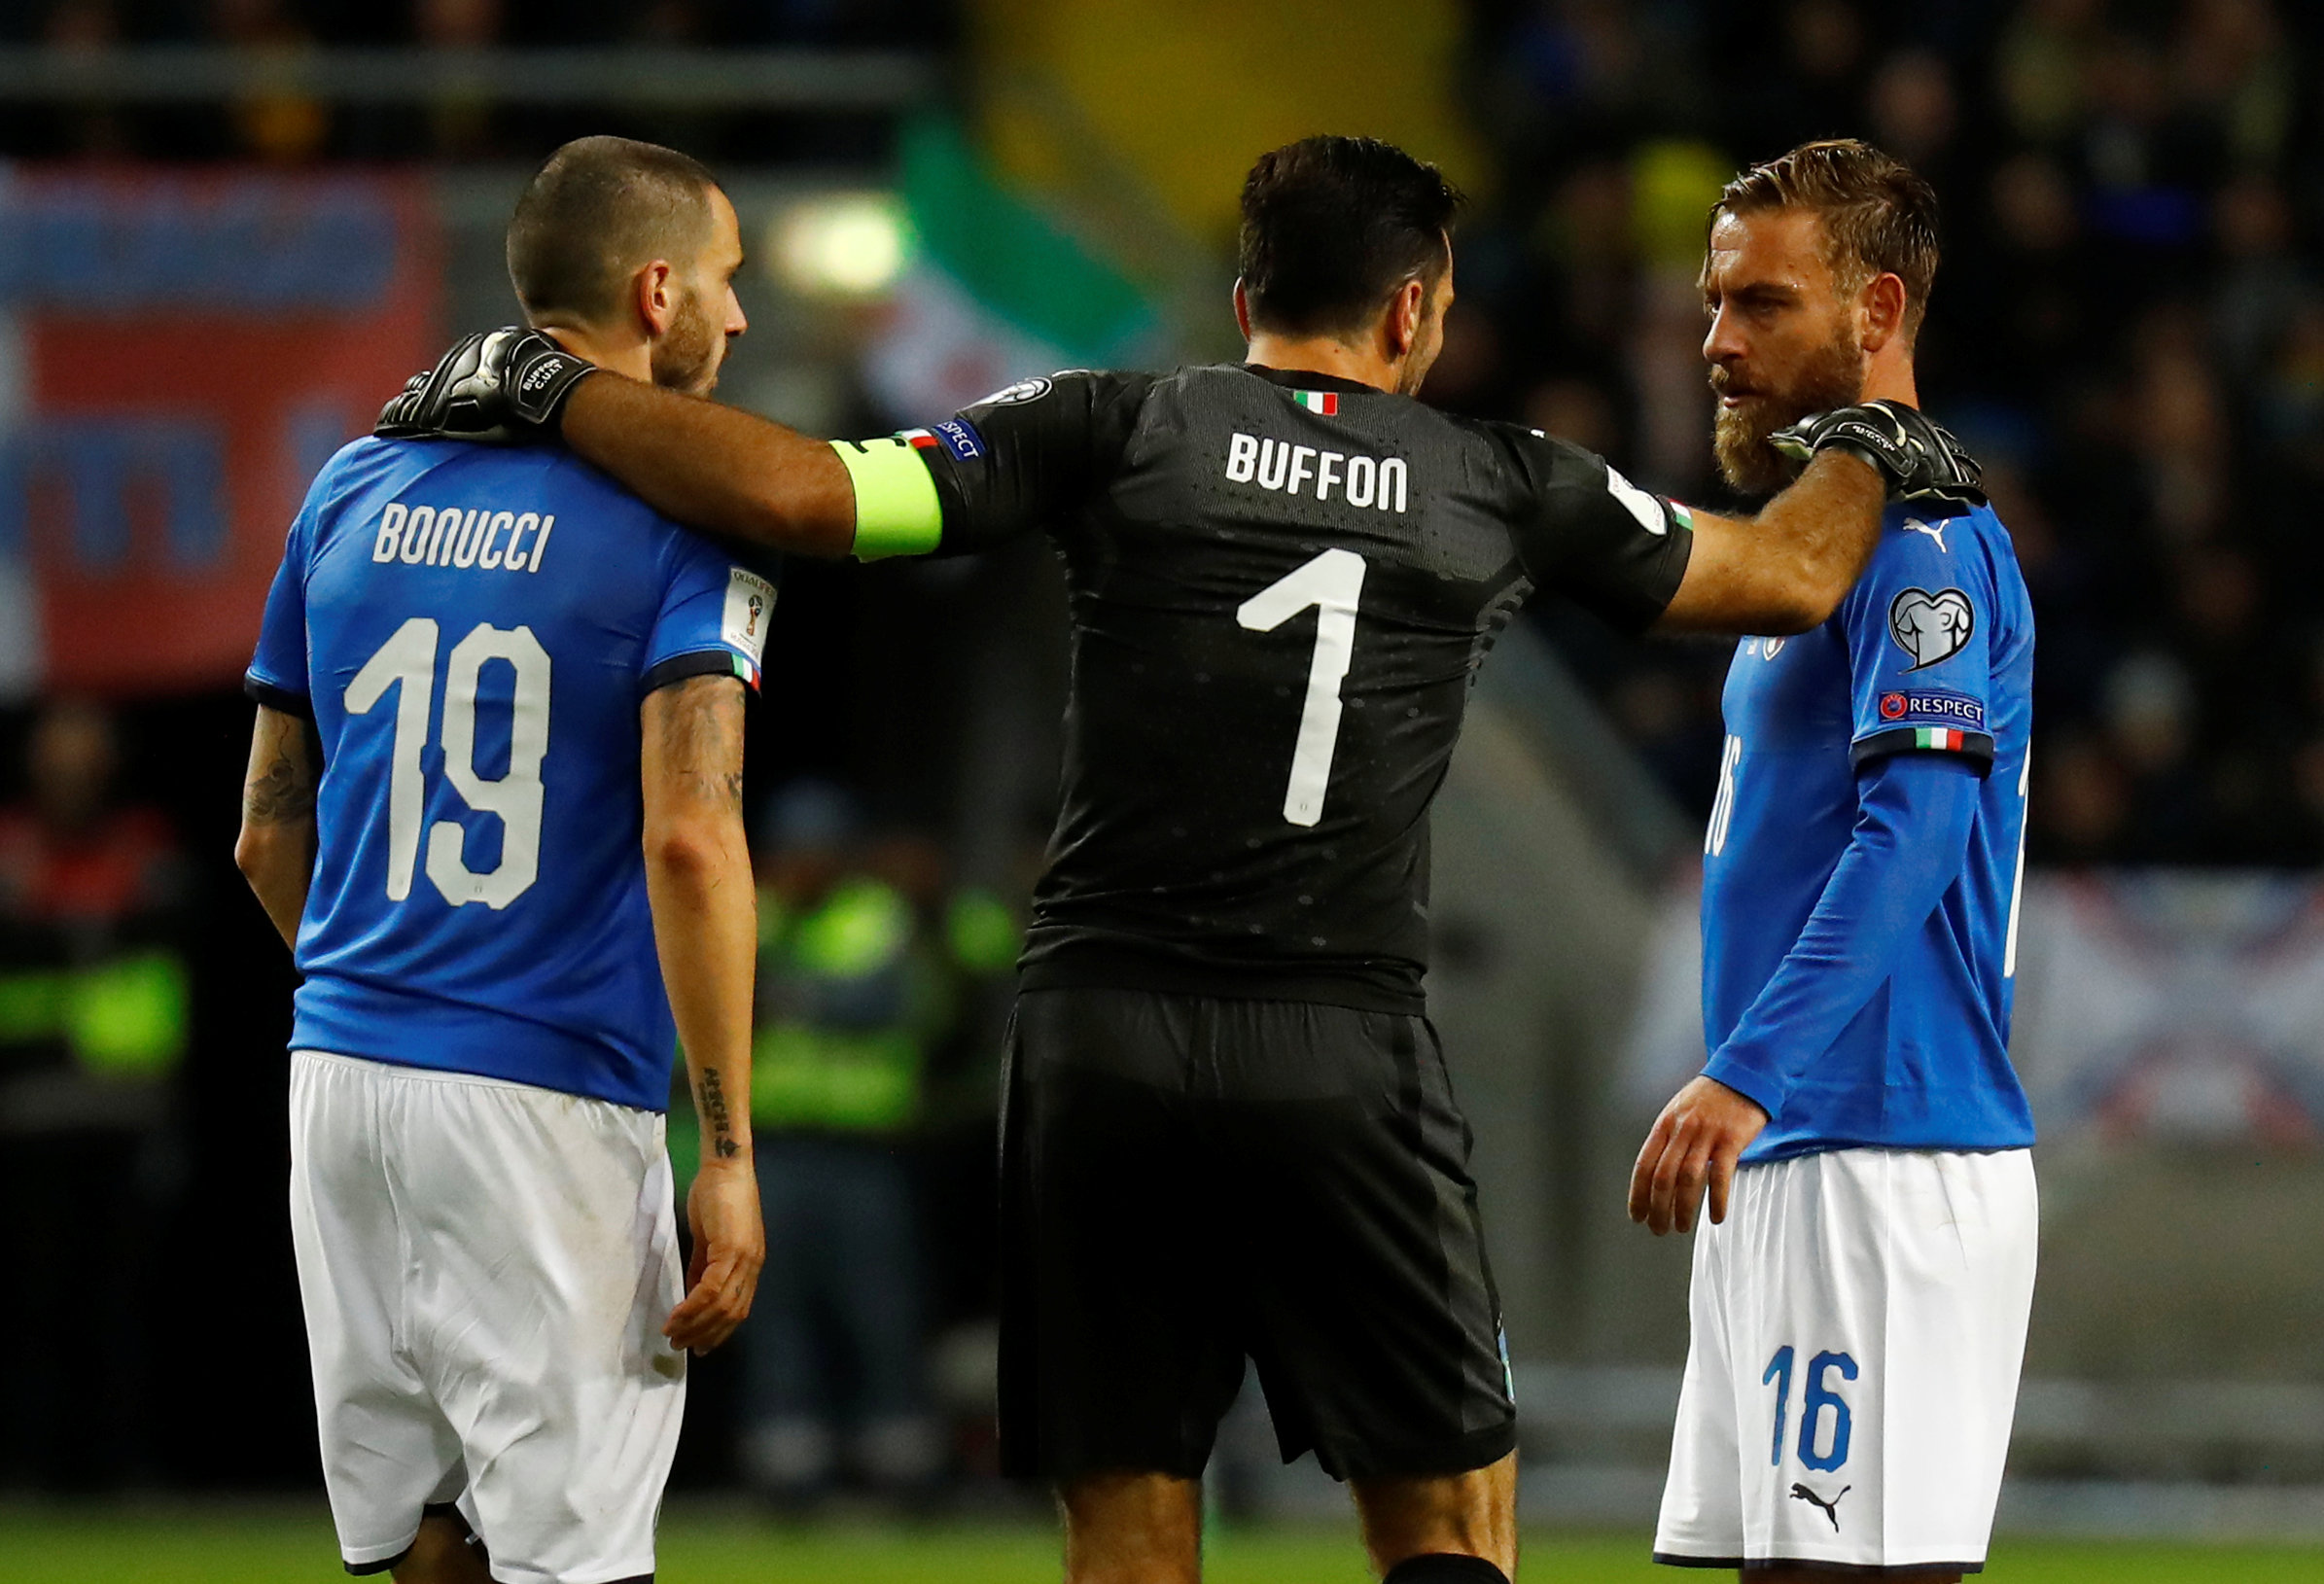 Thủ môn Buffon (giữa) cùng đồng đội ở tuyển Ý bước vào trận đấu lớn gặp Thụy Điển. Ảnh: Reuters